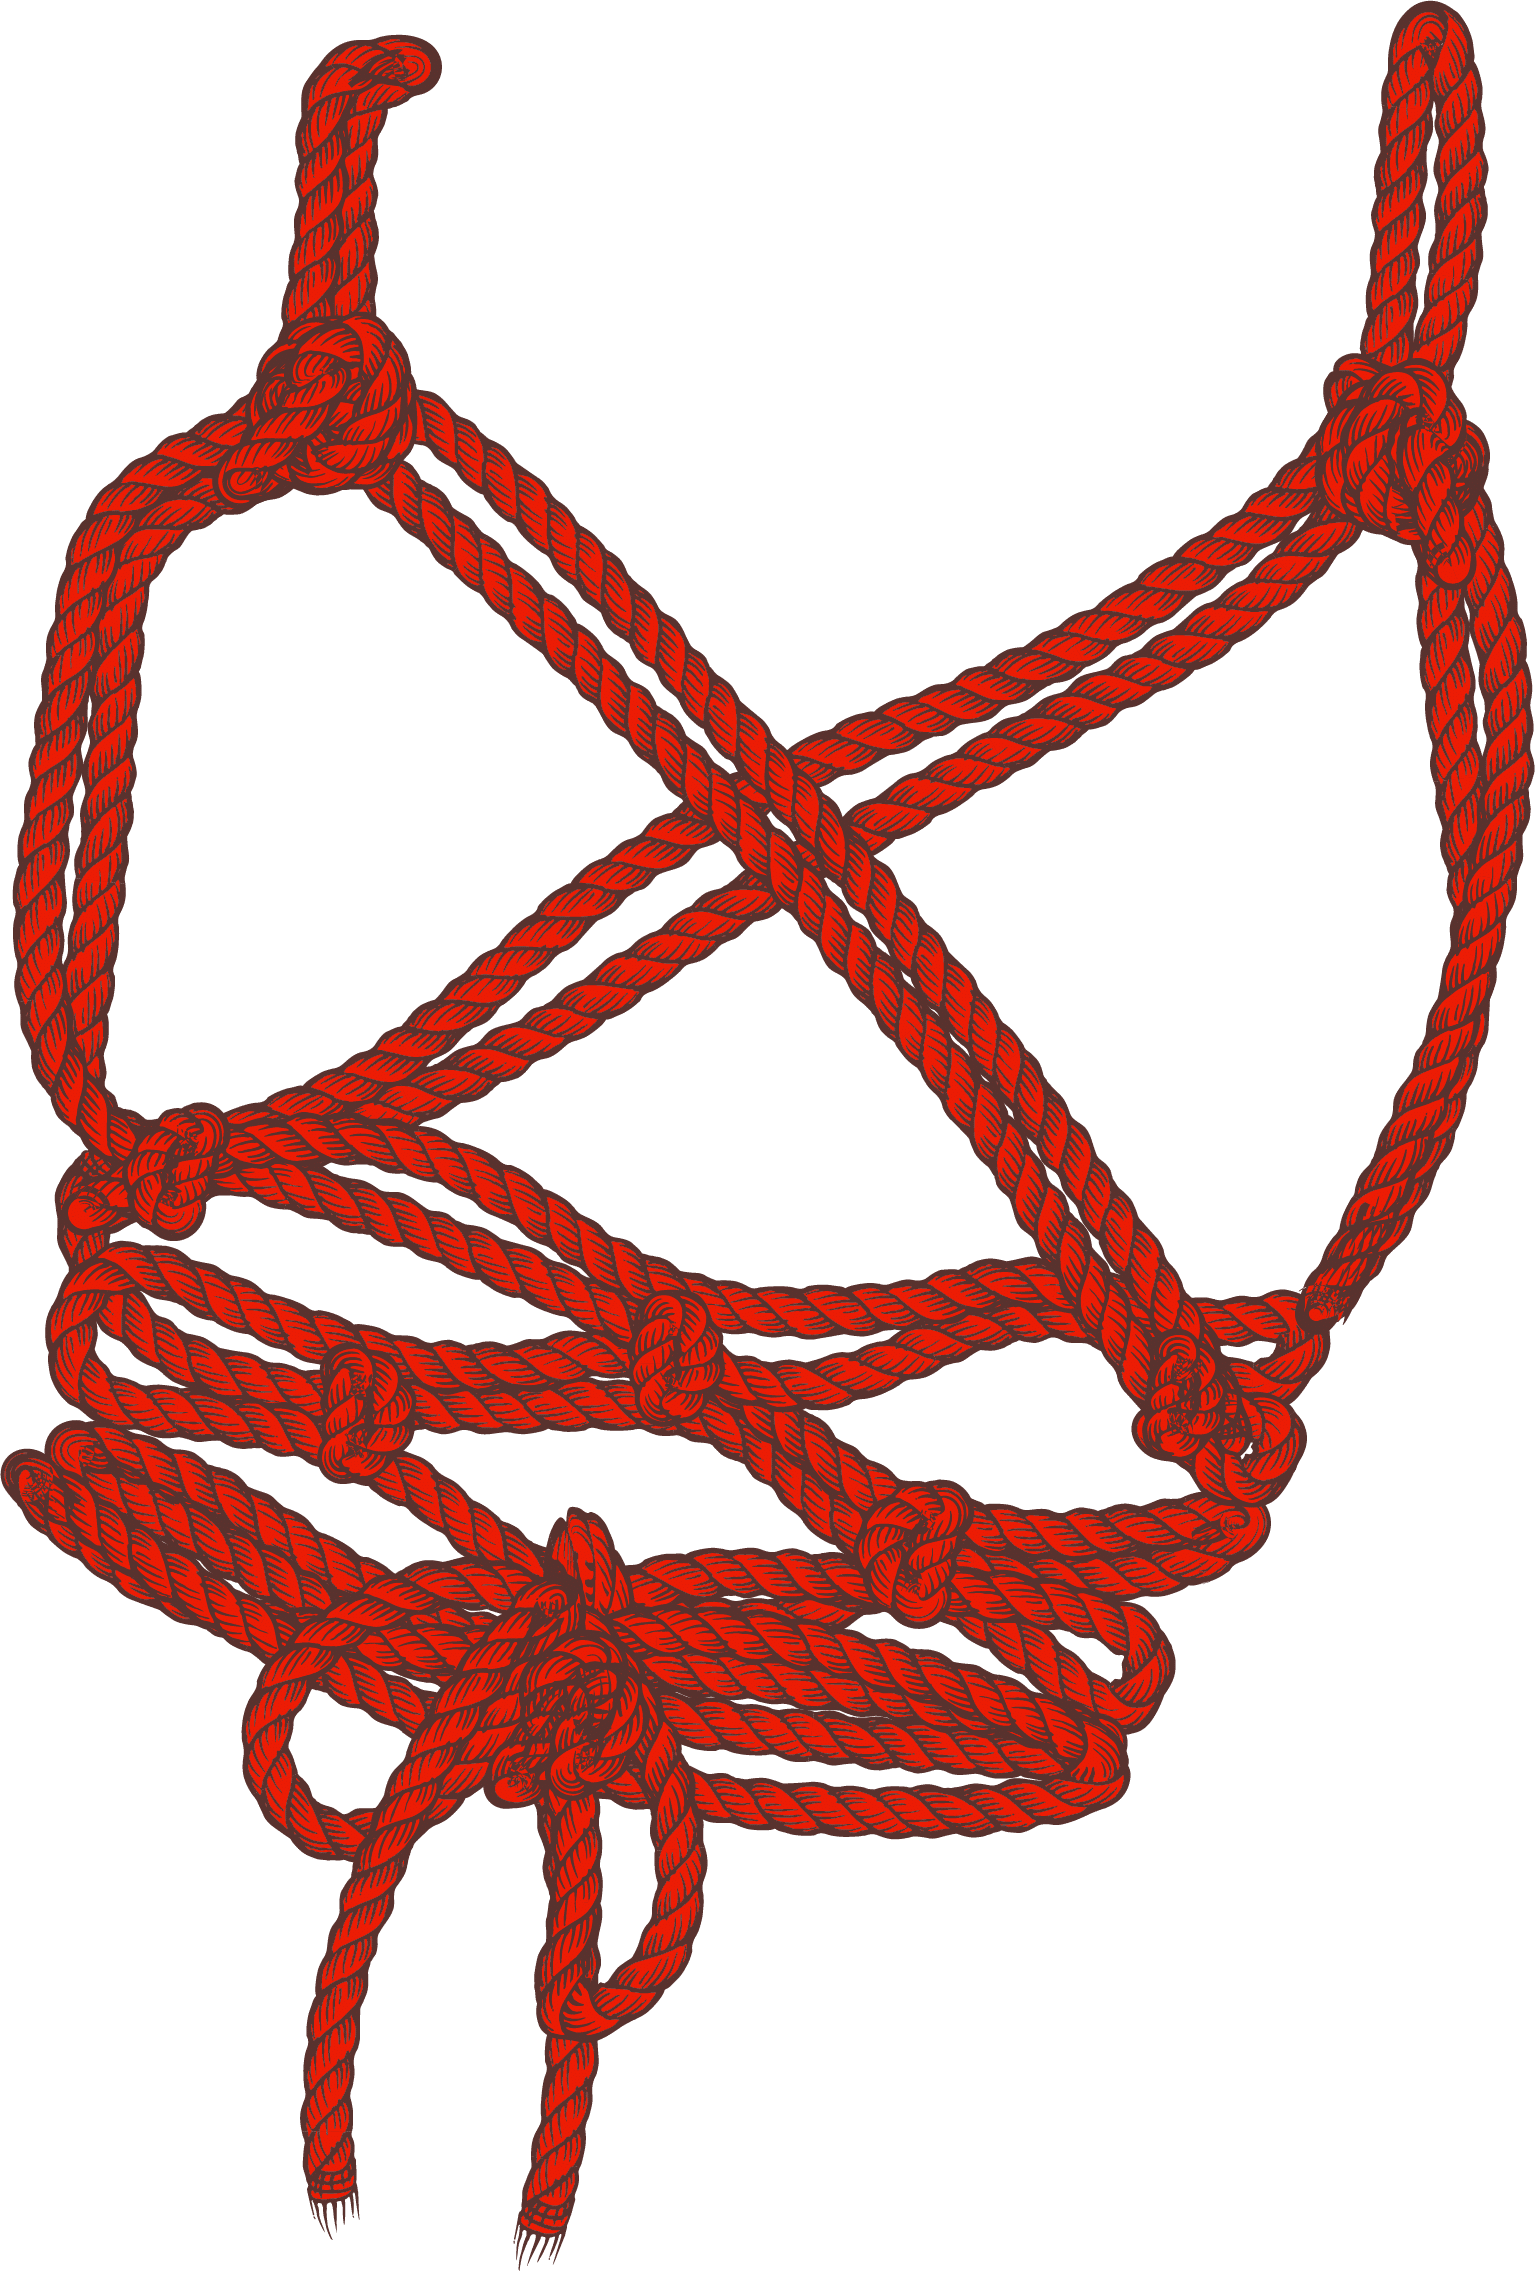 How to Use Bondage Rope